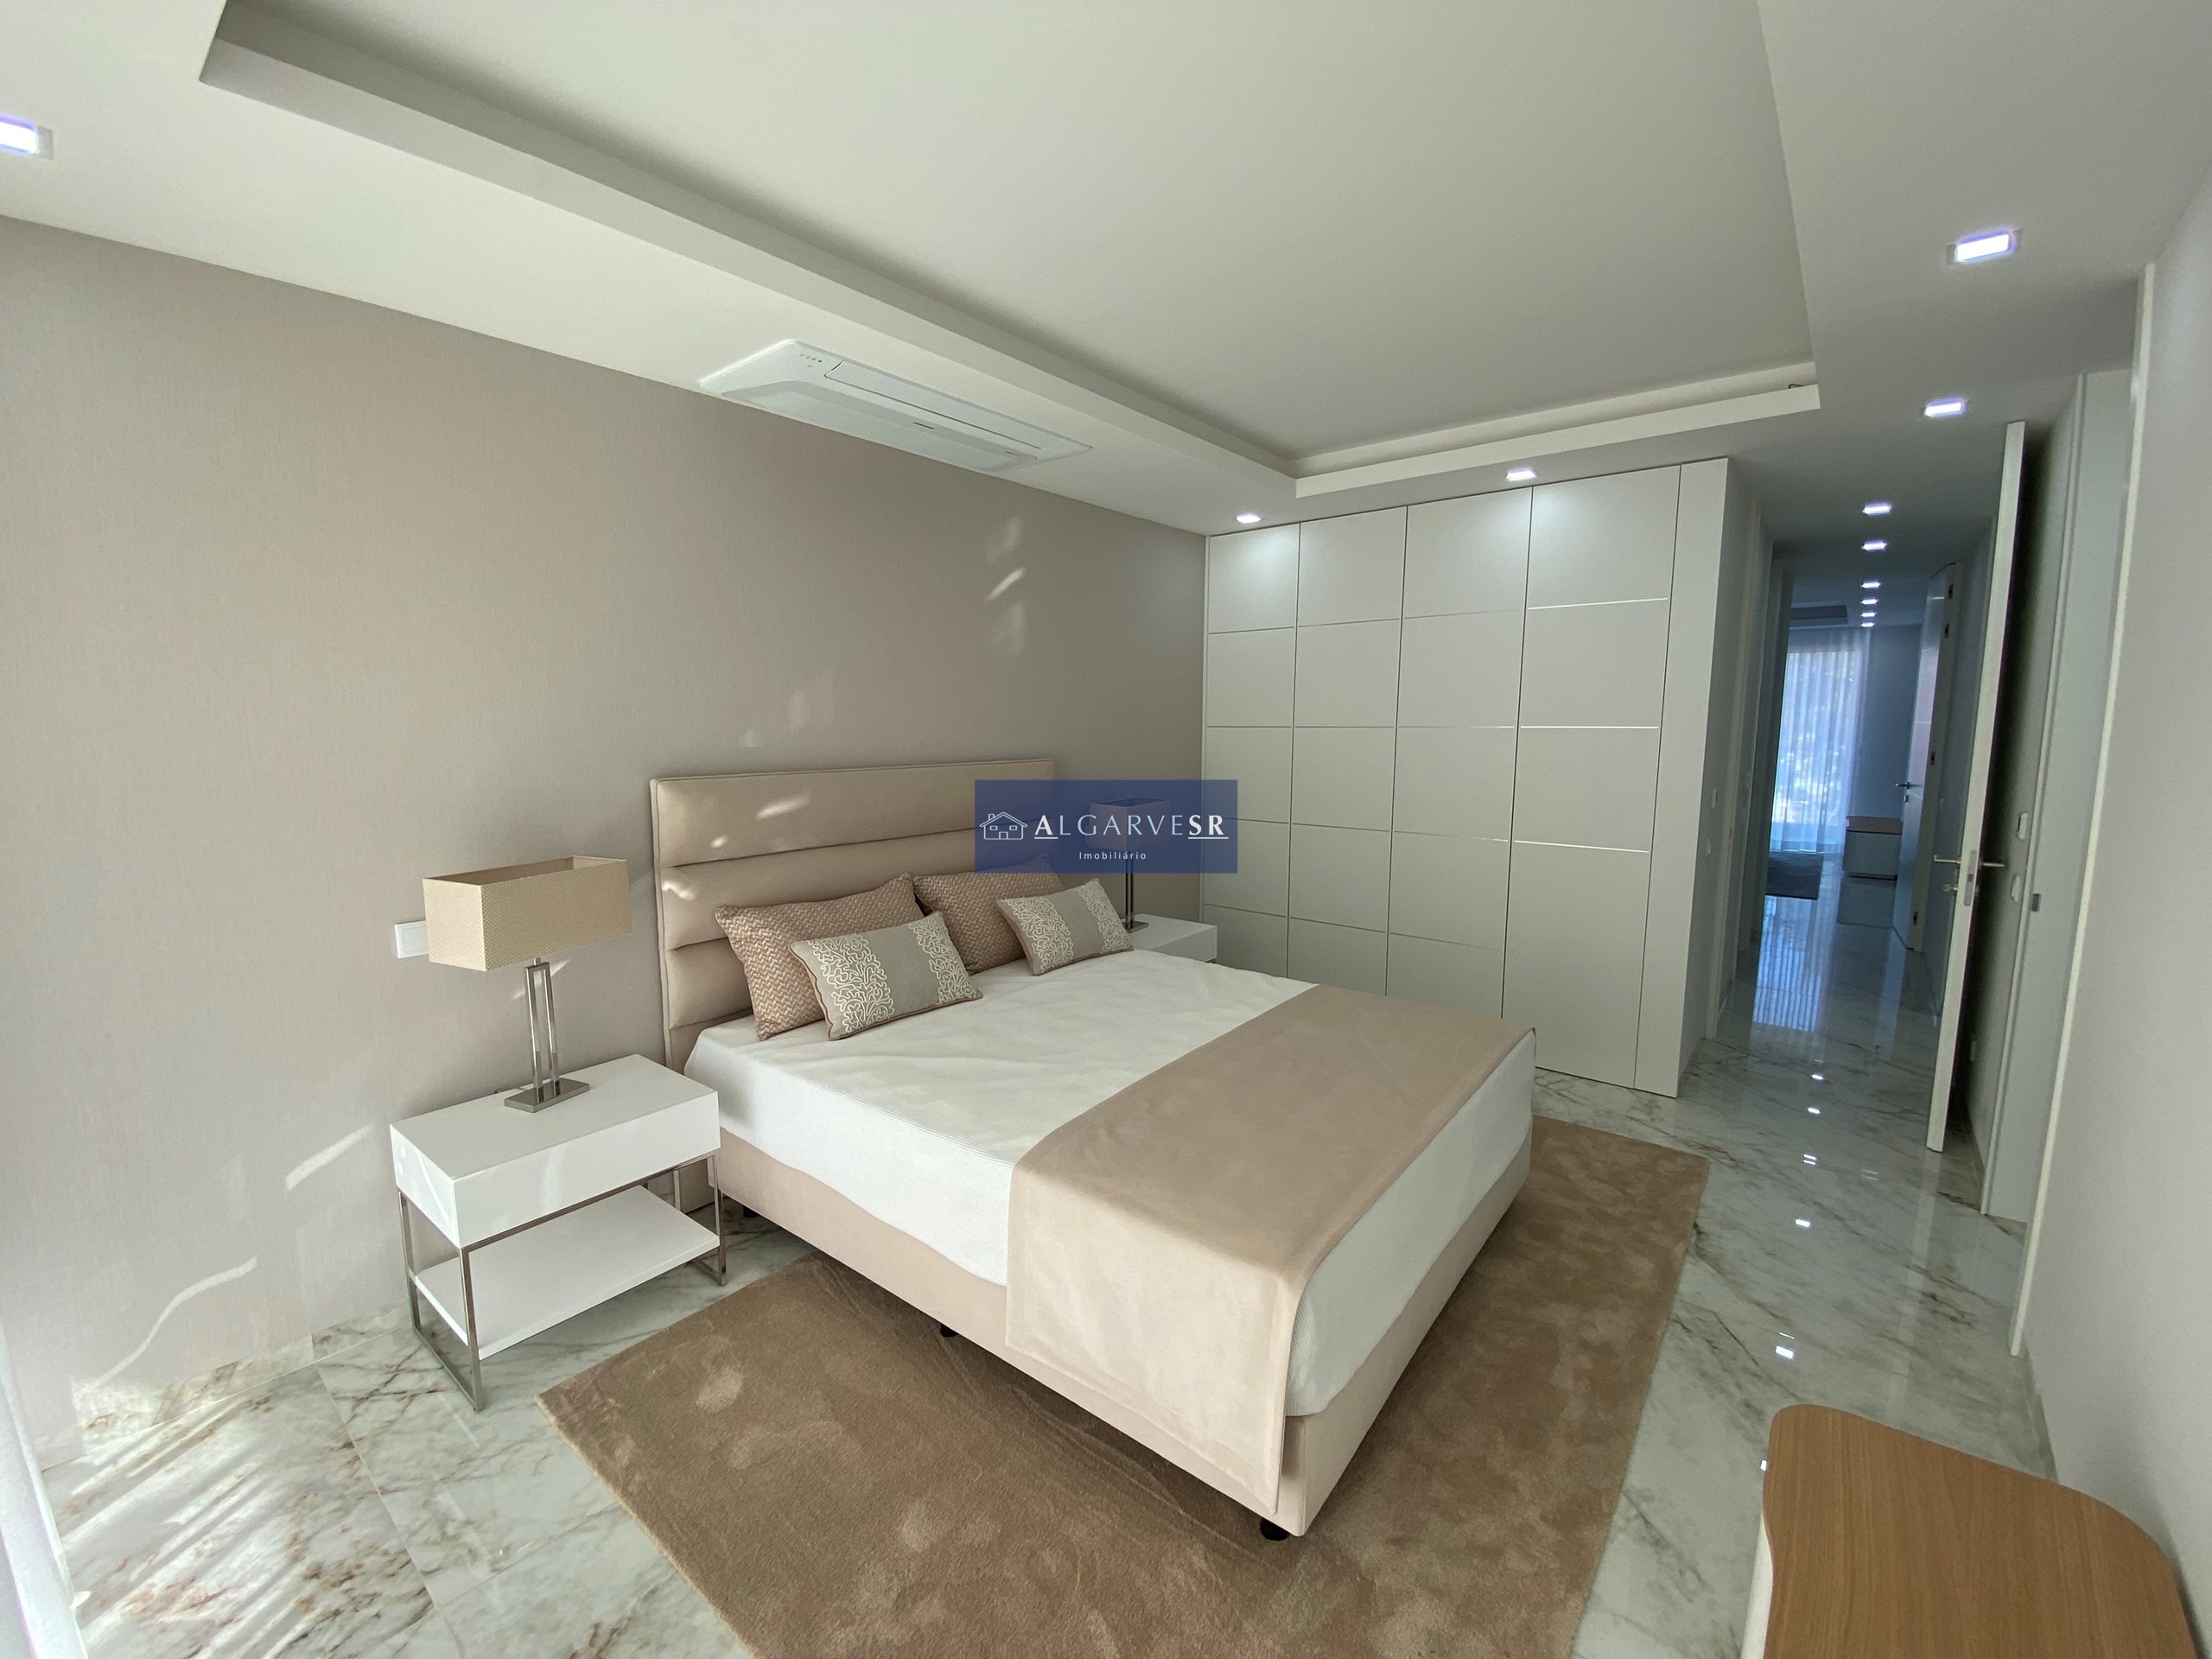 Lagos - ApartmentsT3 New in luxury condominium w / pool